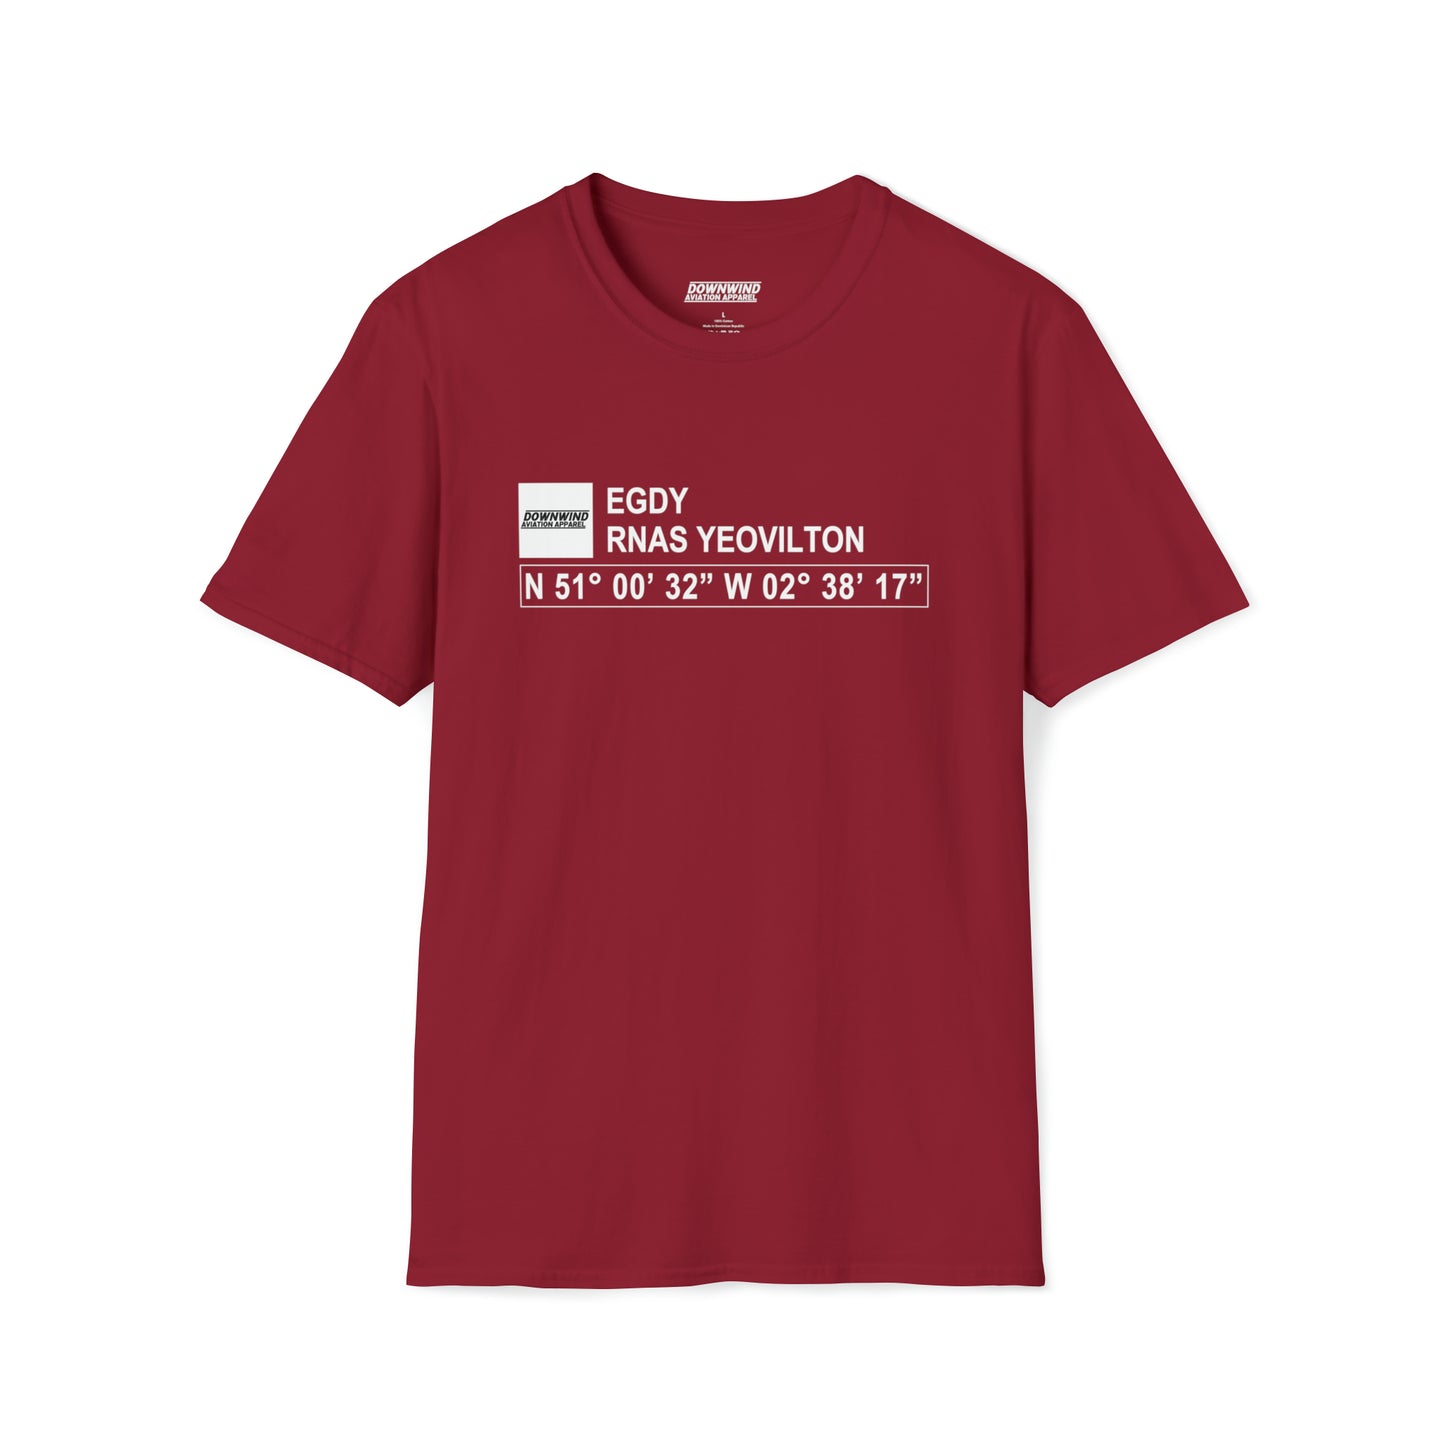 EGDY / RNAS Yeovilton T-Shirt